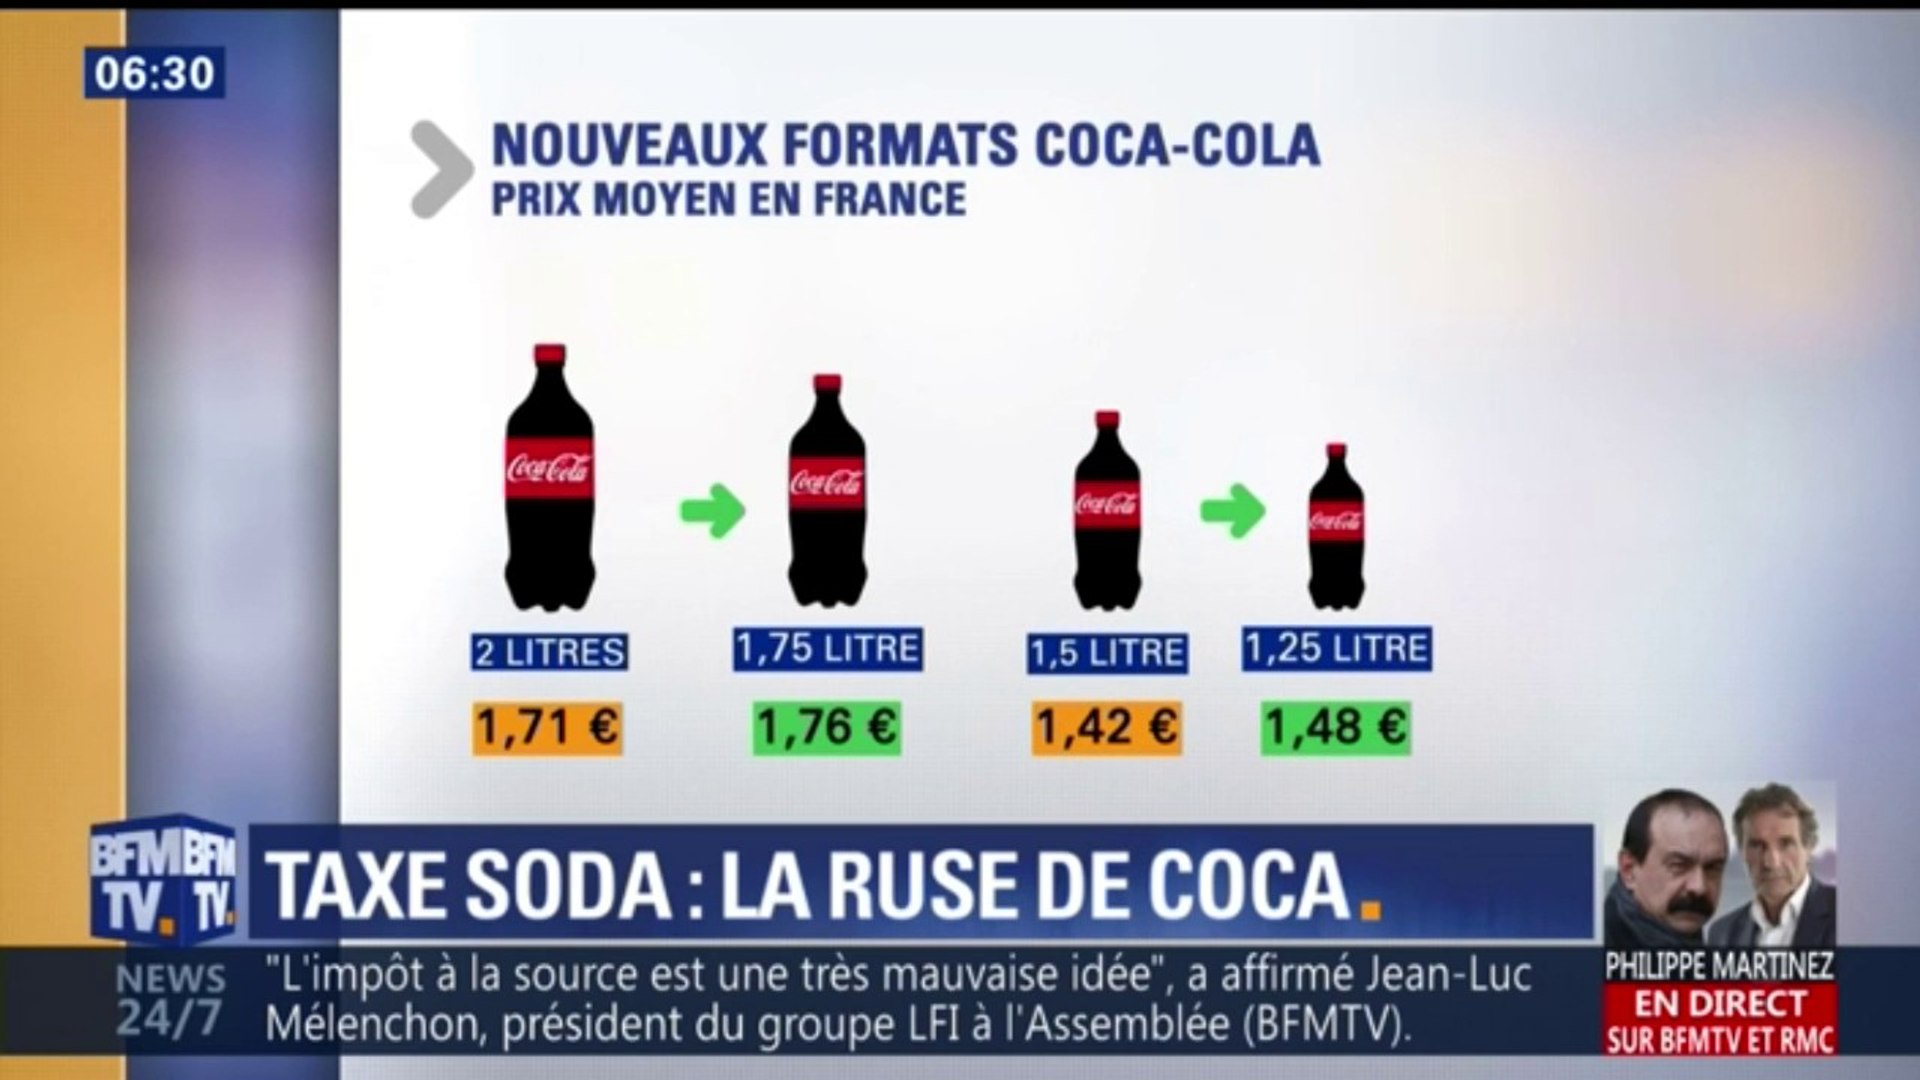 Des bouteilles plus petites et plus chères: la ruse de Coca pour compenser  la taxe soda - Vidéo Dailymotion